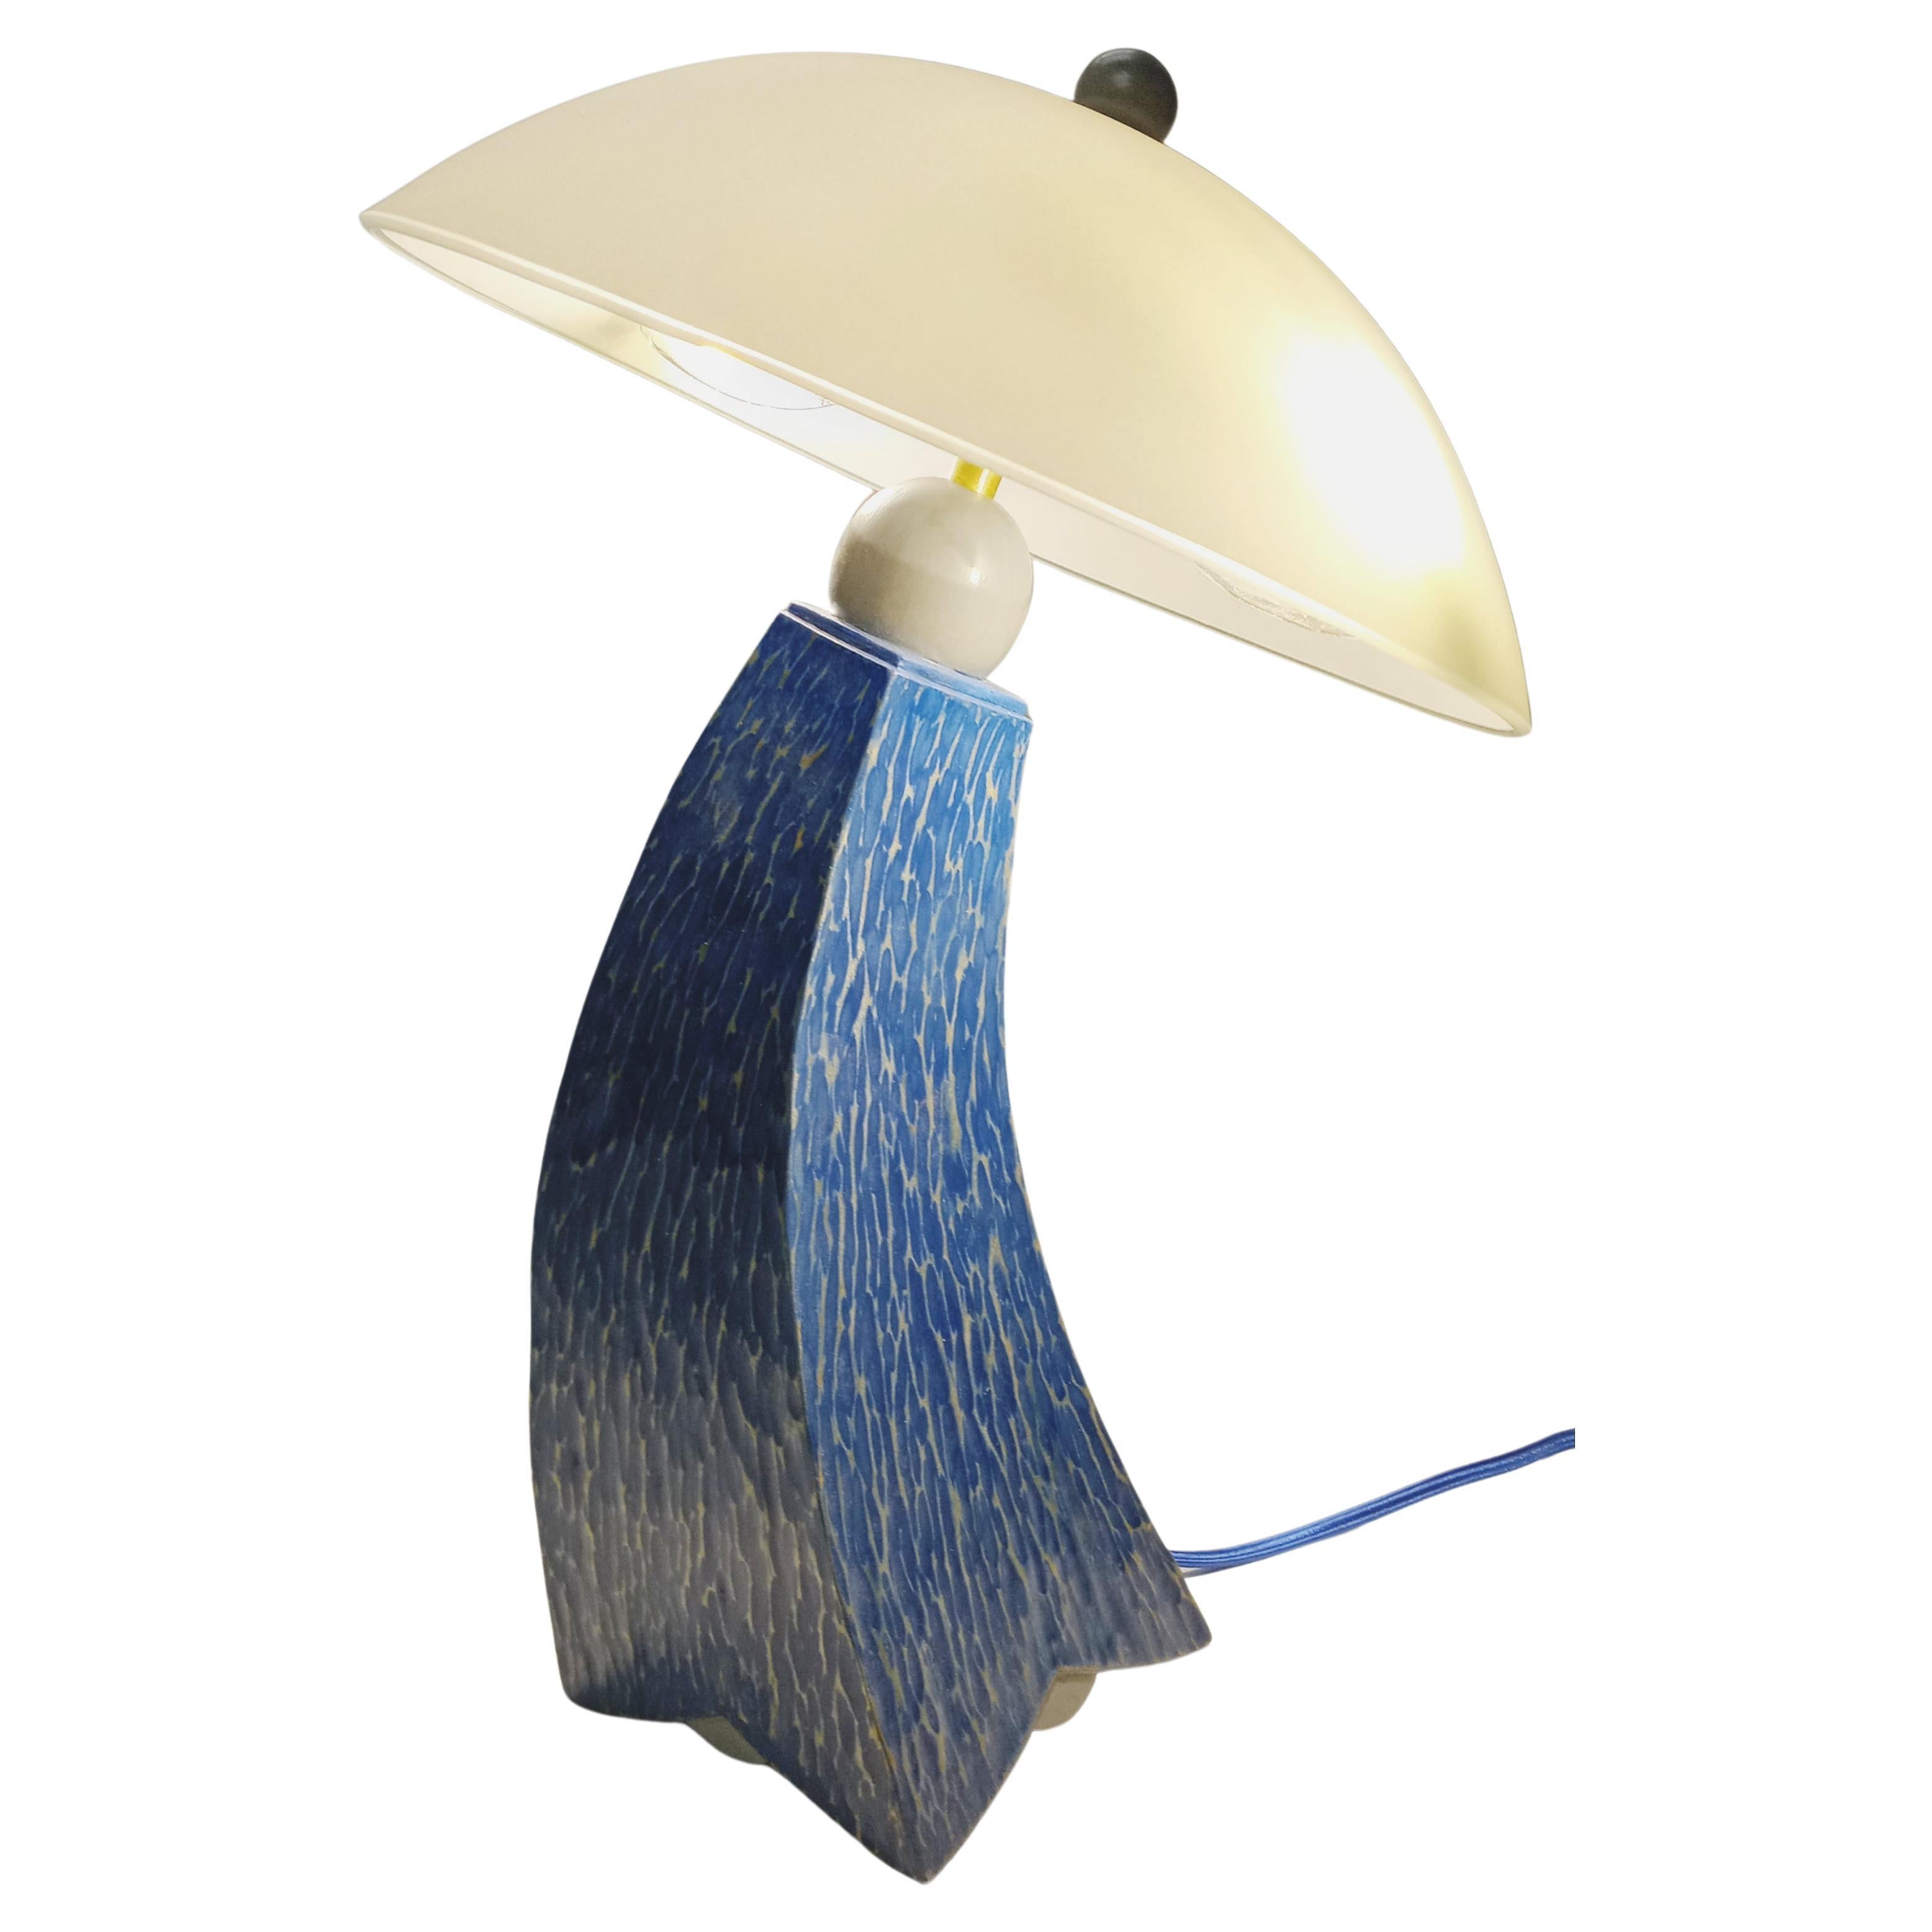 Lampe de table bleu min et gris texturé peinte au lait d'inspiration jazz, en stock